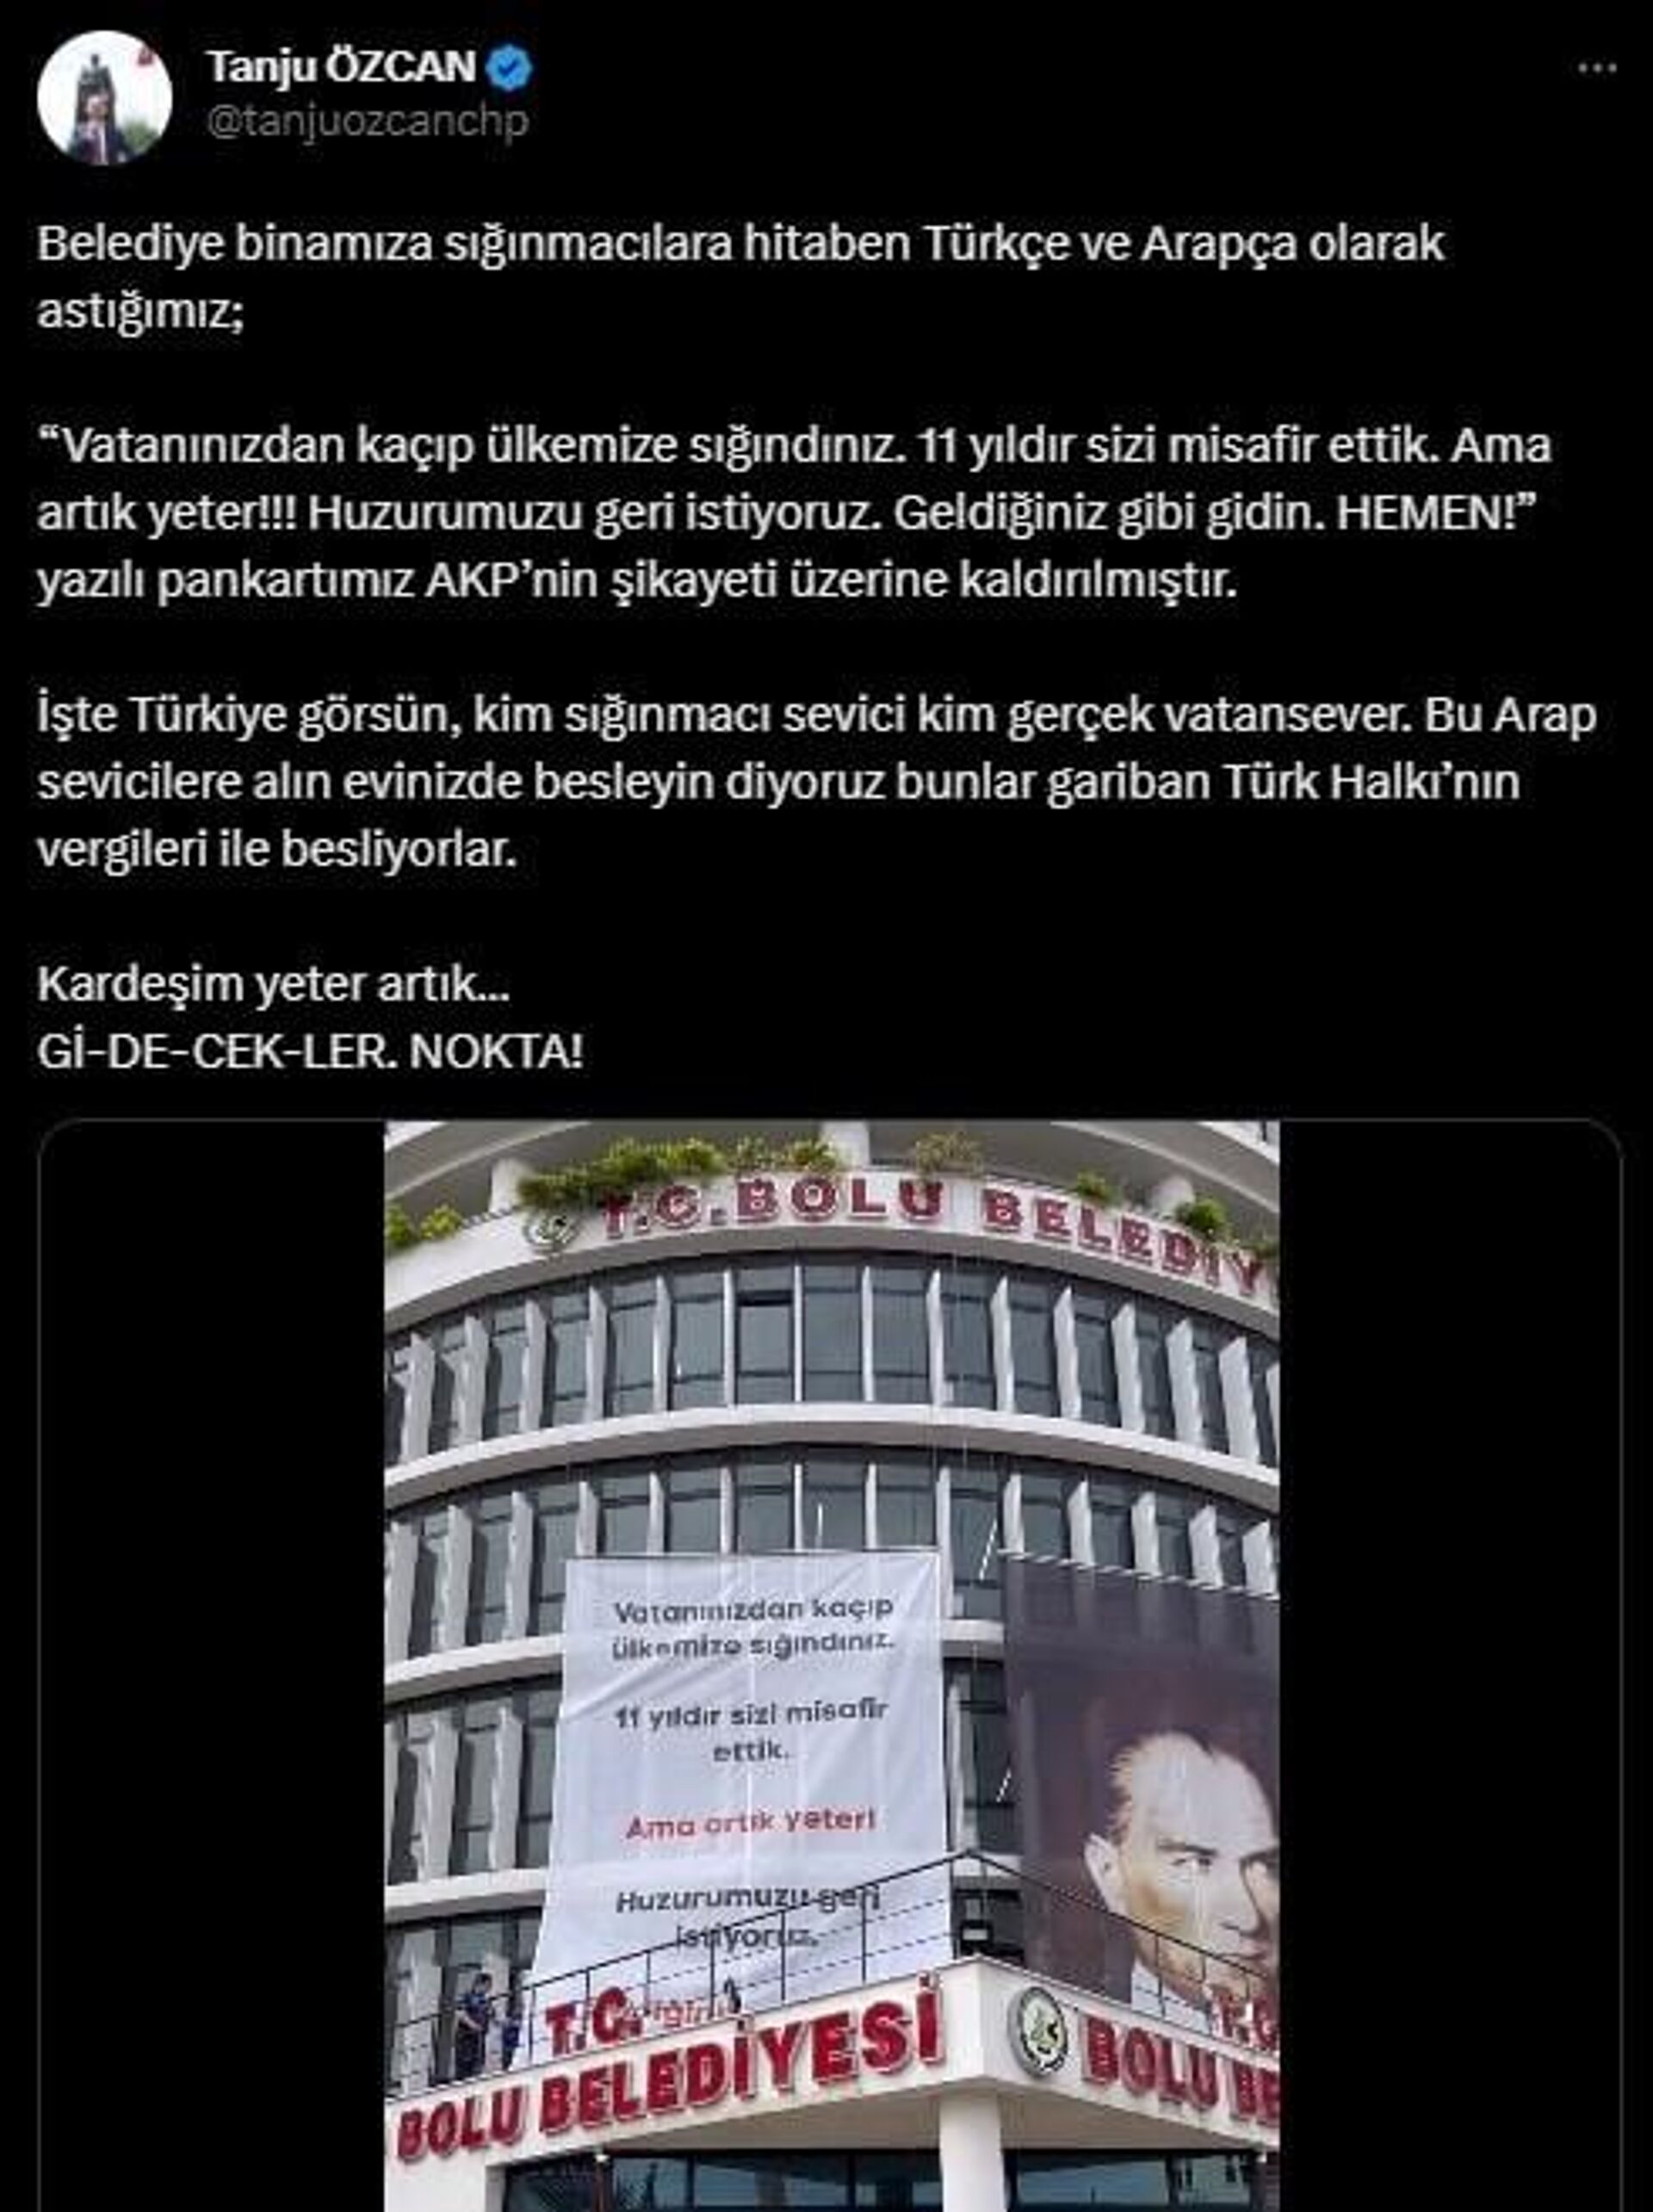 Bolu Belediye Başkanı Tanju Özcan'ın belediye binasına astırdığı geçici sığınmacılara yönelik Türkçe ve Arapça ifadelerin yer aldığı pankart seçim yasakları çerçevesinde indirildi. - Sputnik Türkiye, 1920, 25.05.2023